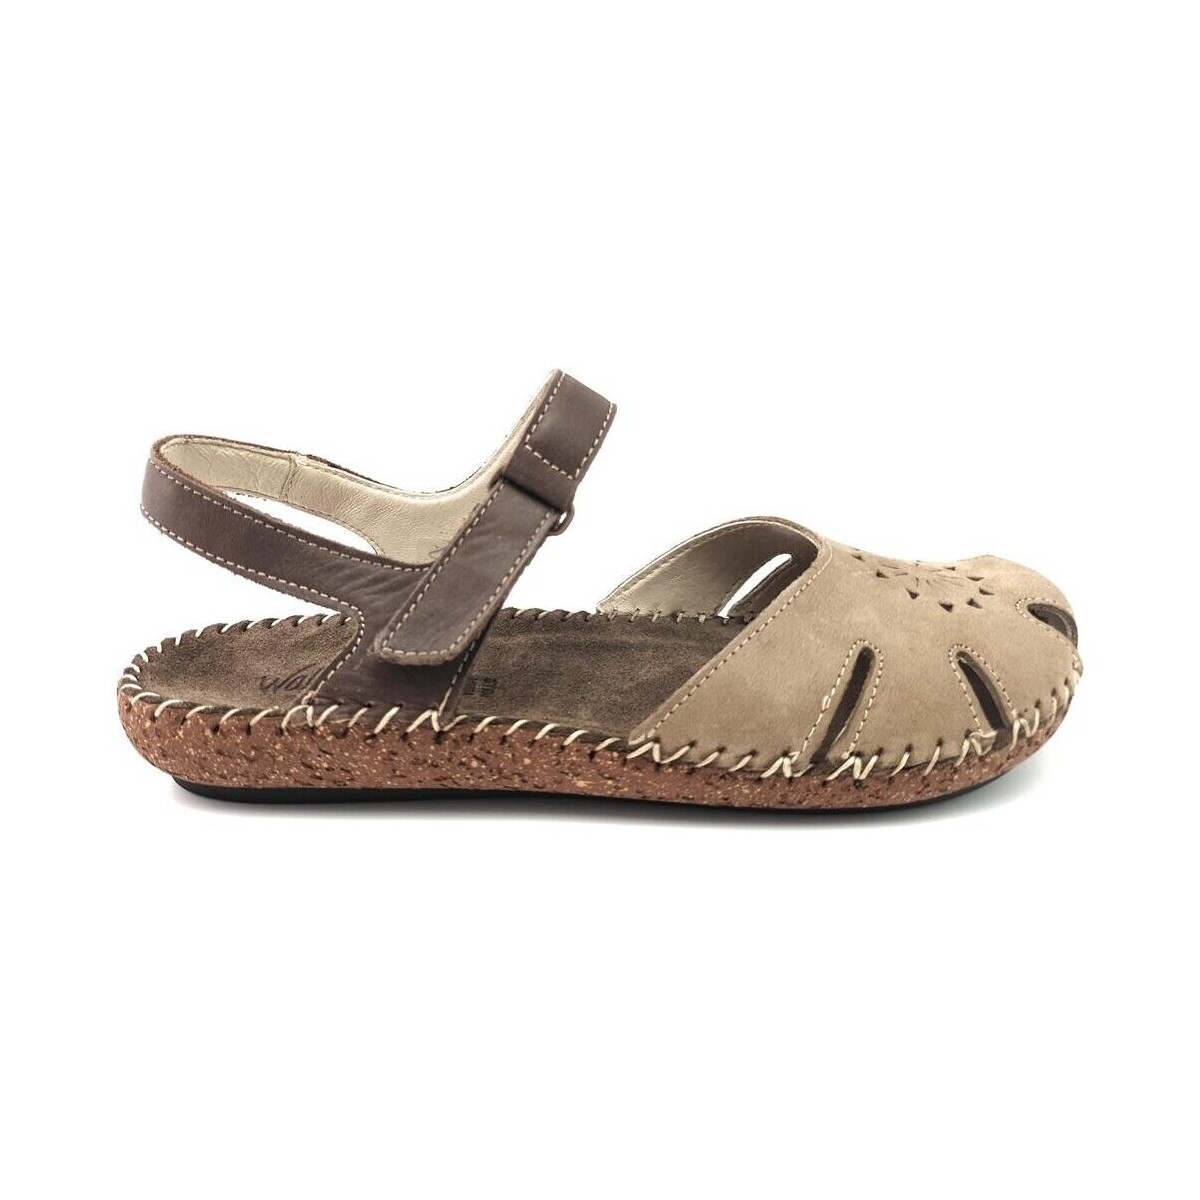 Chaussures Femme Sandales et Nu-pieds Veuillez choisir votre genre SANDALE WALK & FLY 7261-457101 CUIR BEIGE-MARRON Marron